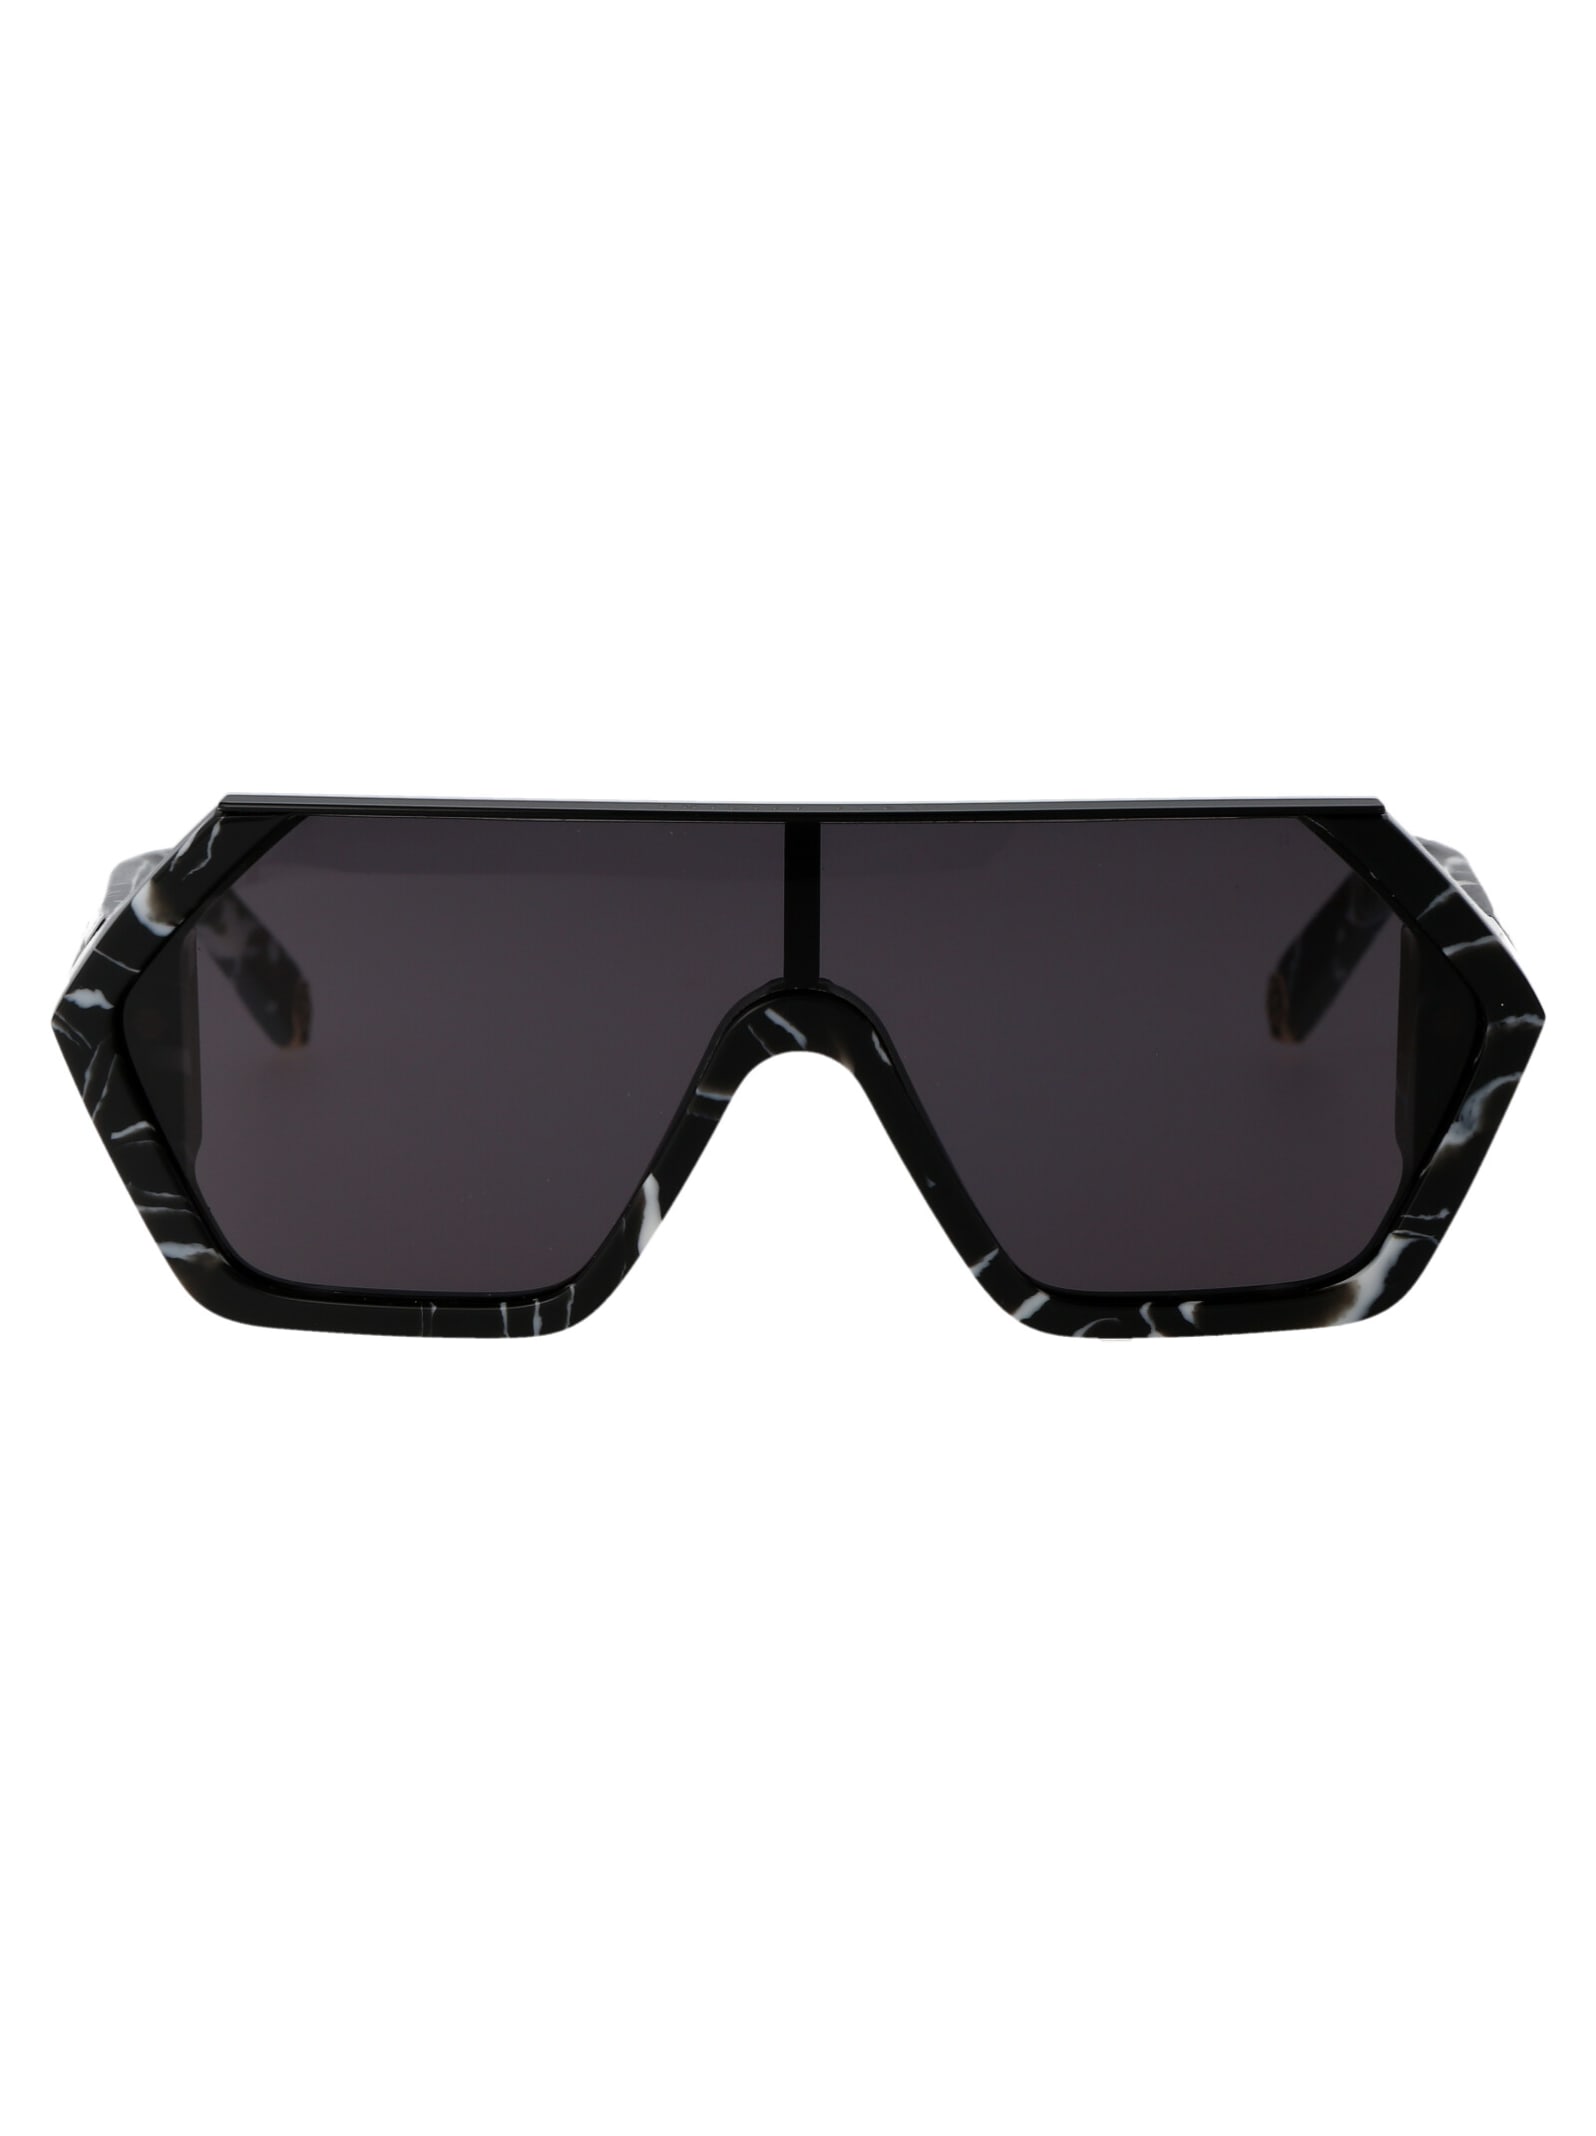 Shop Philipp Plein Spp047 Sunglasses In 0z21 Nero Marmorizzato